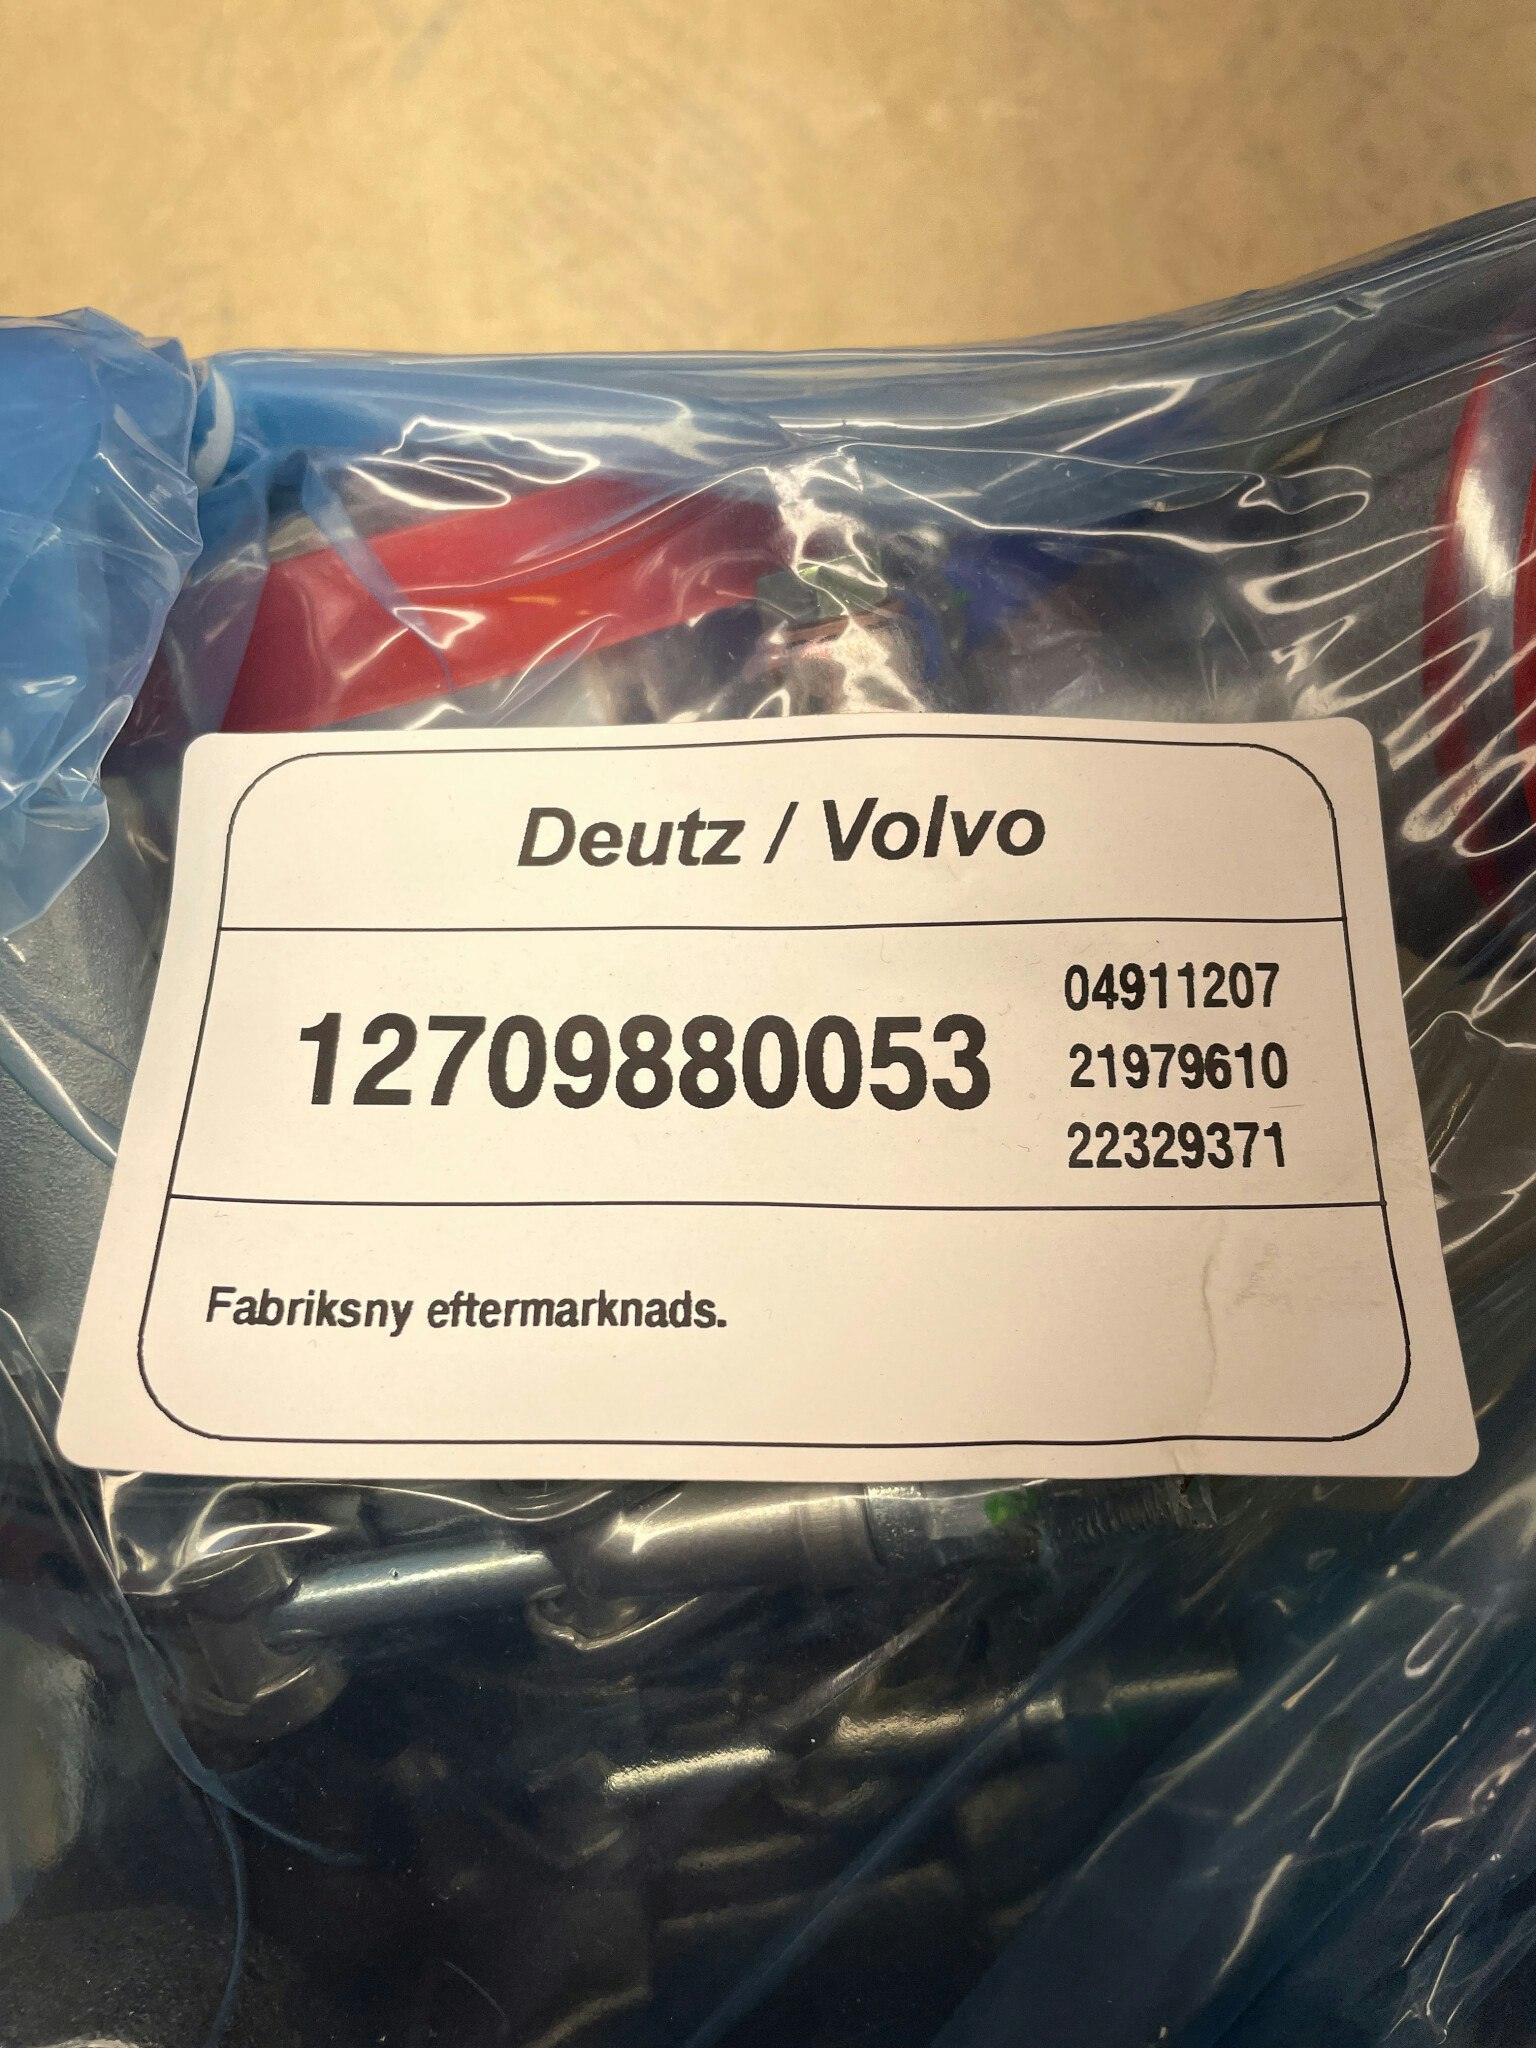 Fabriksny eftermarknads B2G Deutz / Volvo EC turbo